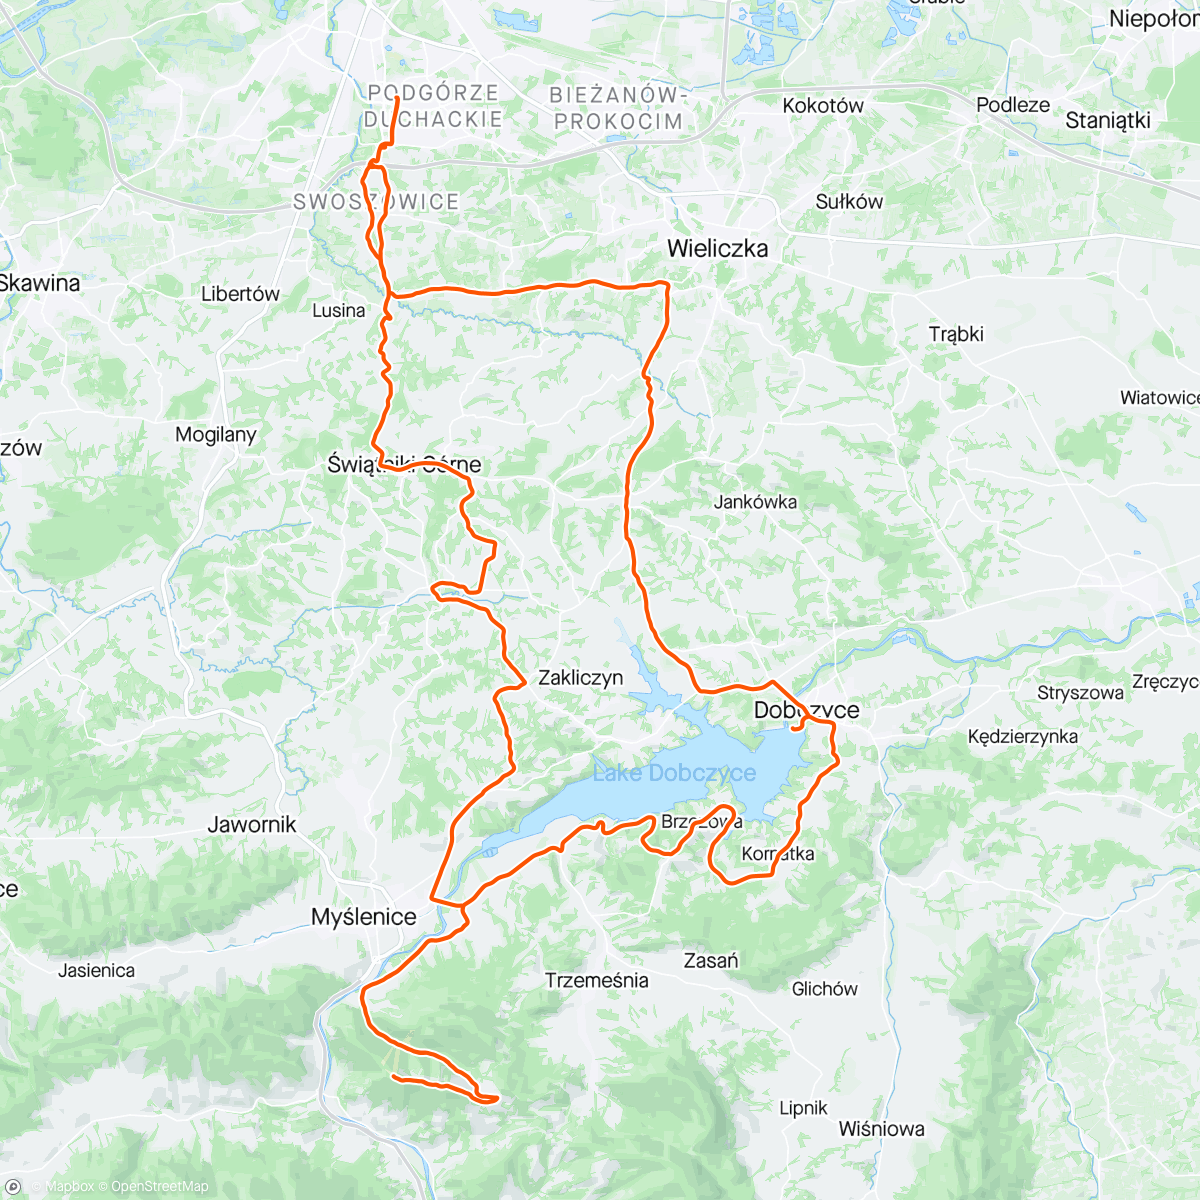 「Wycieczka: Chełm+Lago Dobczyckie」活動的地圖